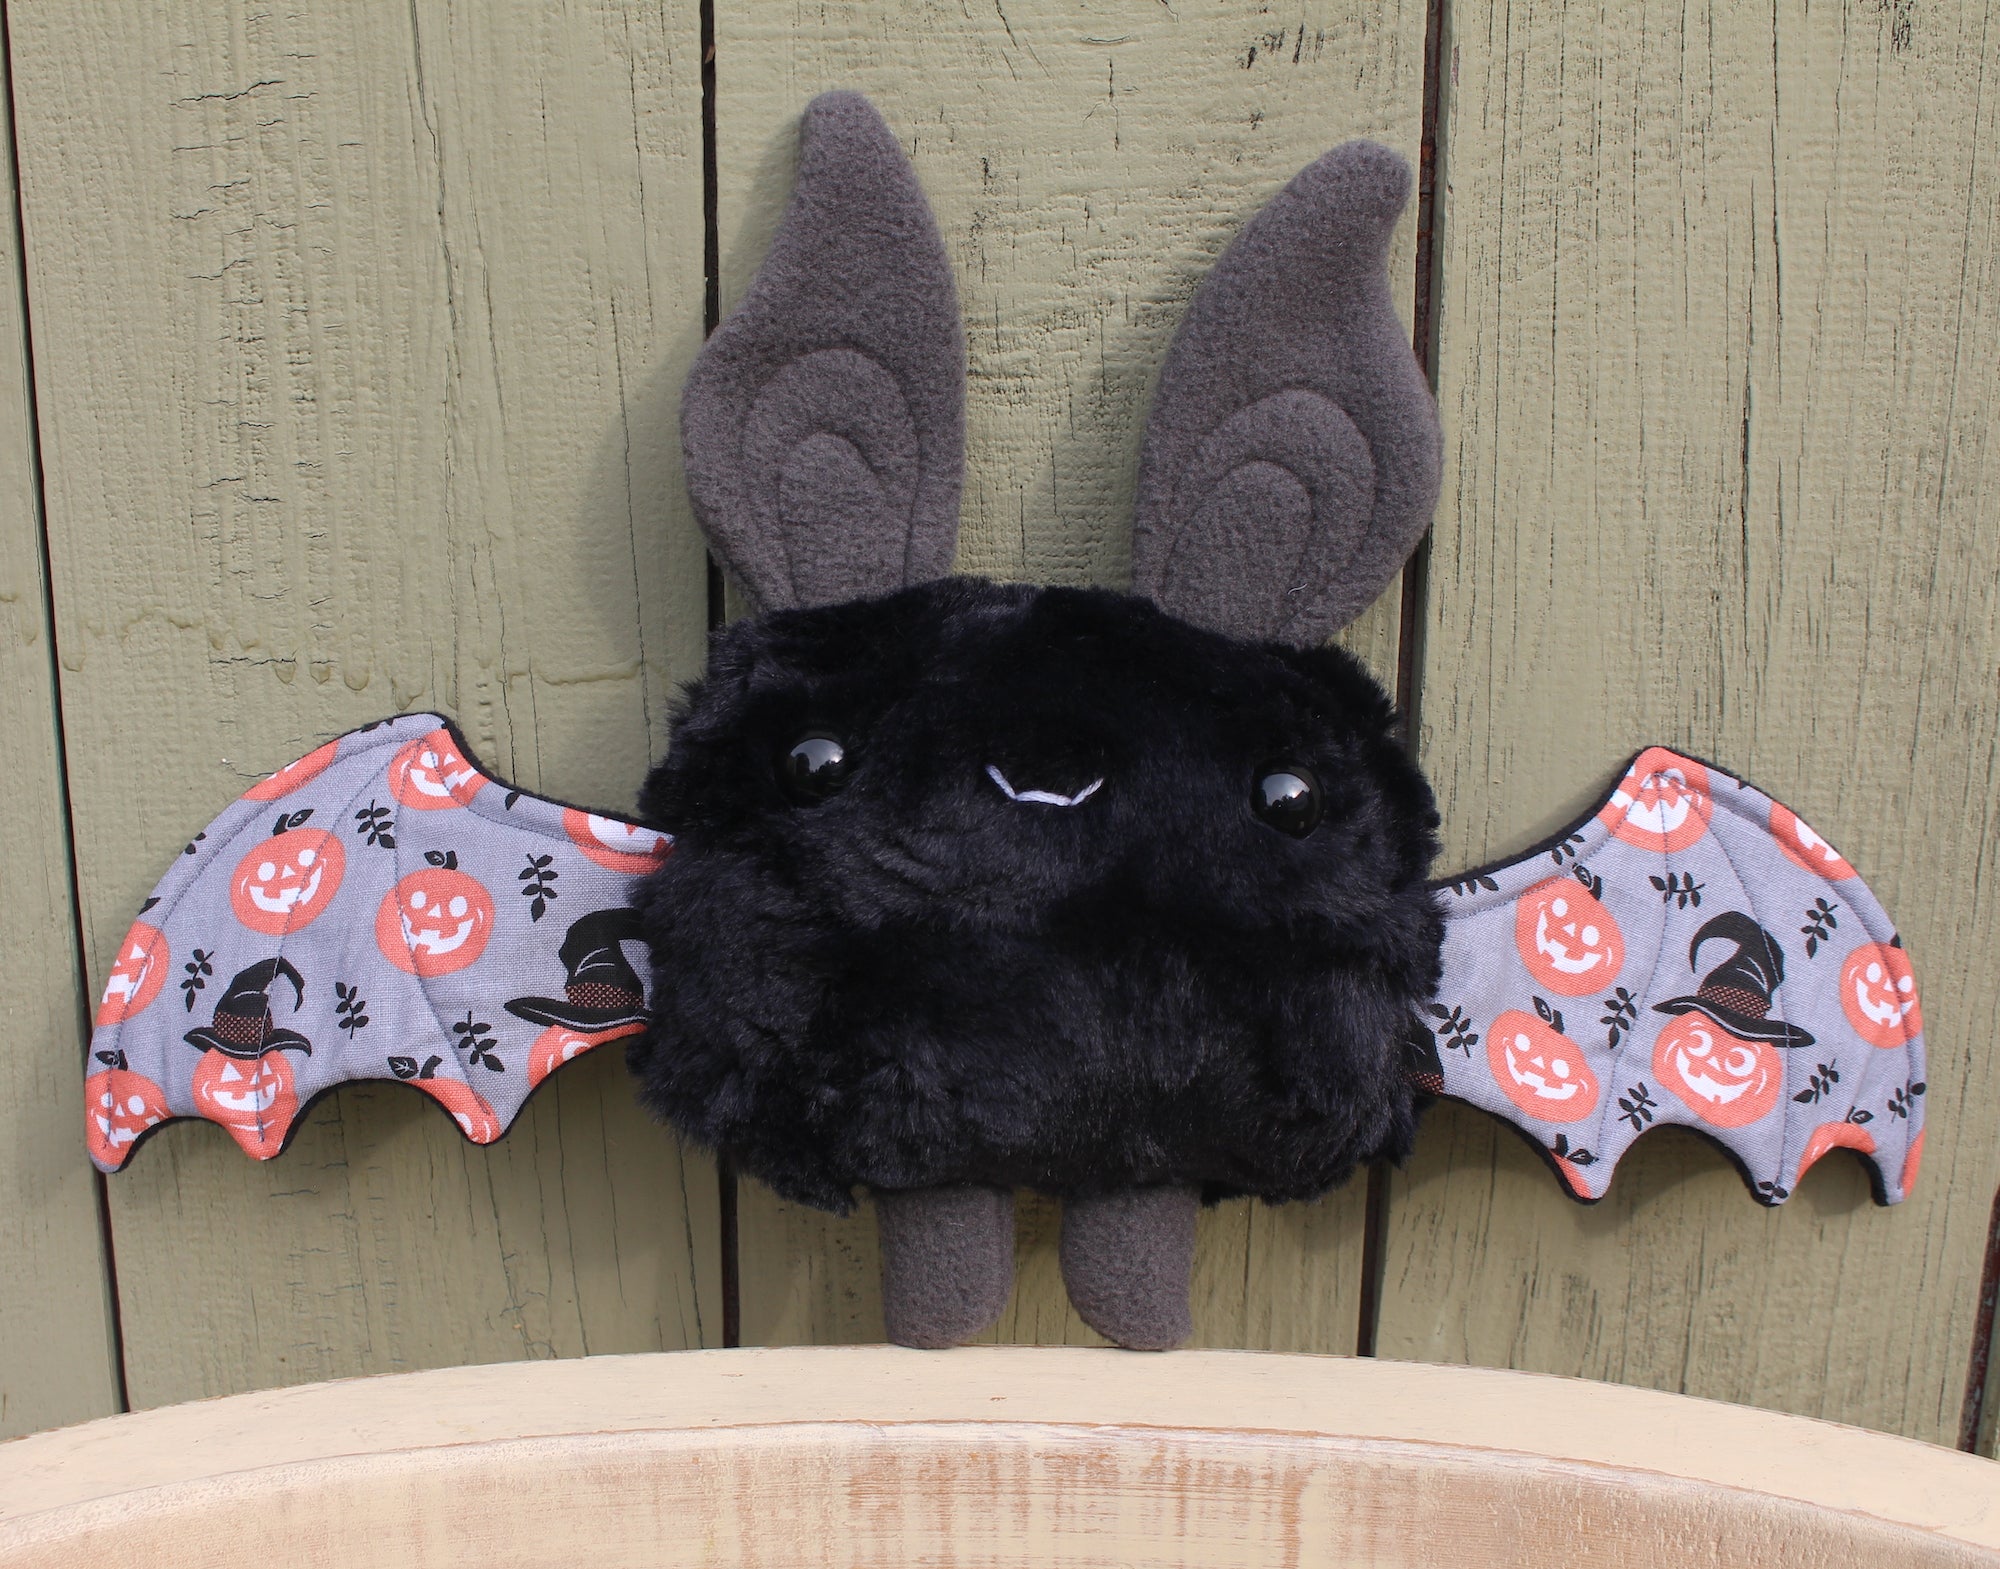 small black bat